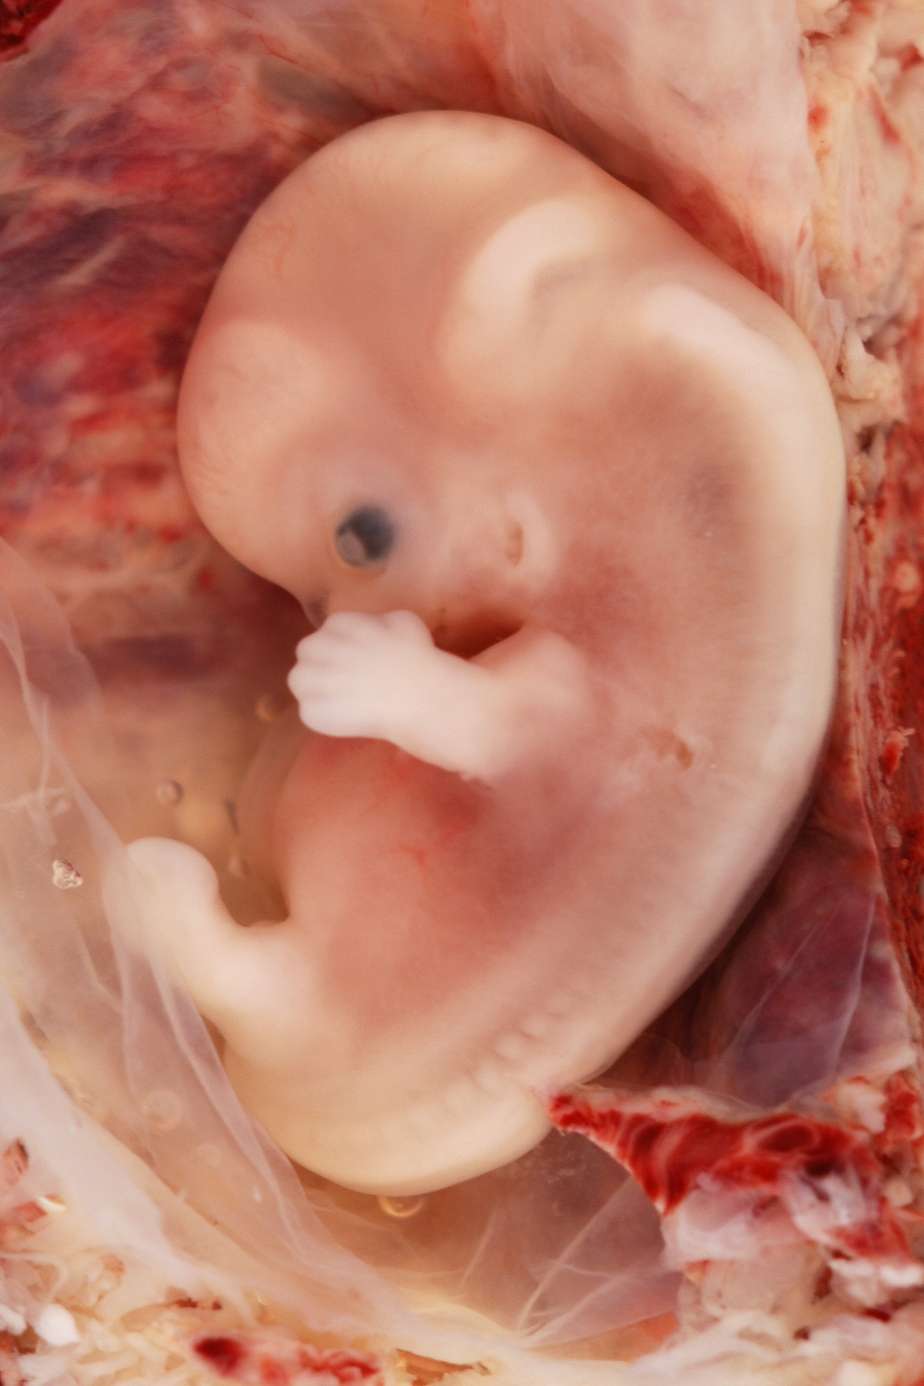 Quelques cellules du fœtus s'échappent du placenta et se retrouvent dans la circulation sanguine de la mère. Par une prise de sang, il devient possible d'en capturer quelques-unes et d'y chercher d'éventuelles certaines anomalies chromosomiques, comme un troisième chromosome 21, à l'origine de la plus célèbre forme de trisomie. © Euthman, Fotopédia, cc by 2.0